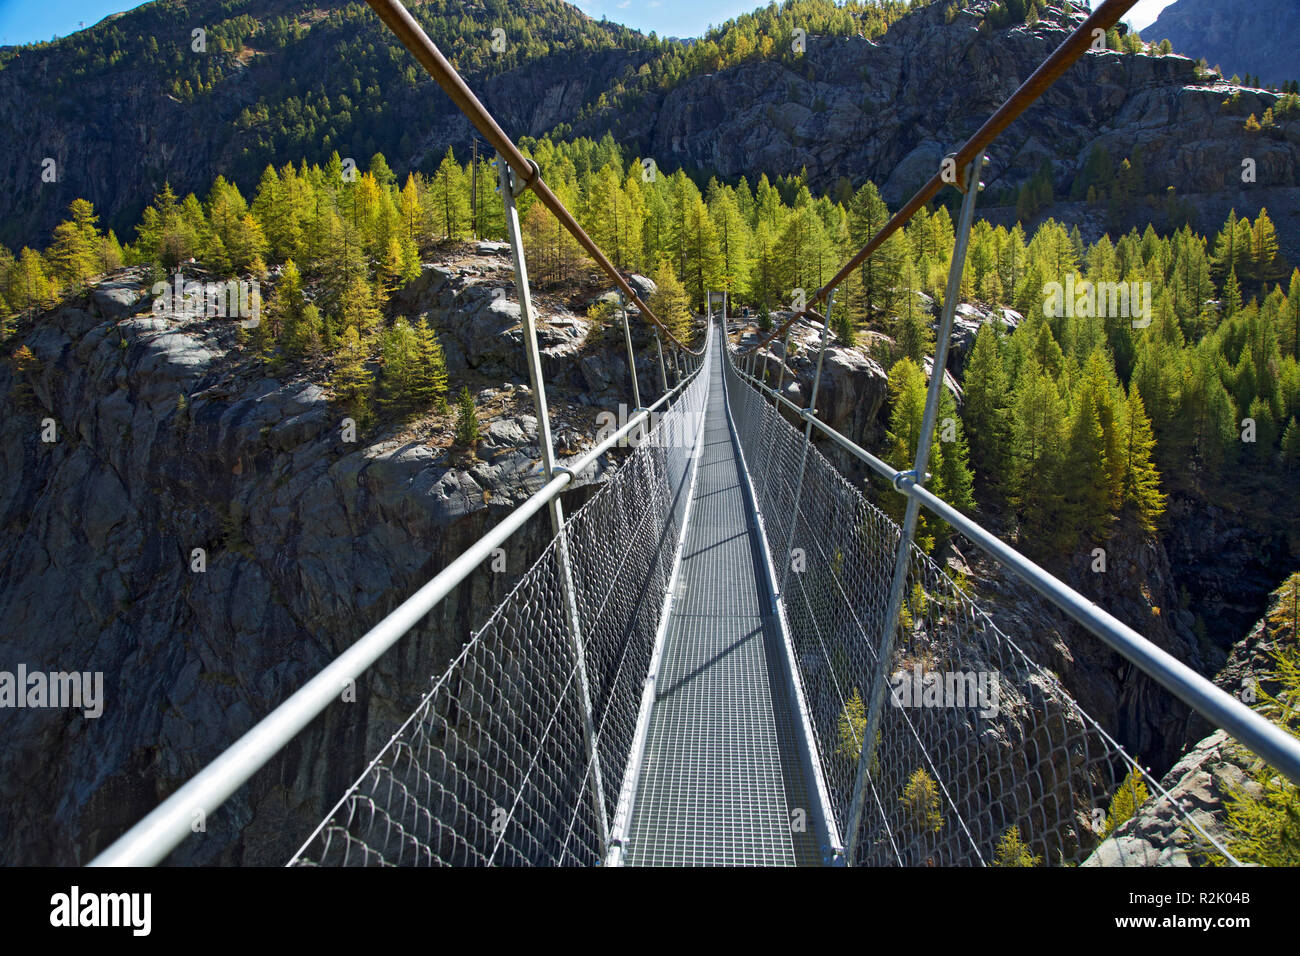 Sospensione ponte sopra il Gorner gorge gorge vicino a Zermatt. Foto Stock